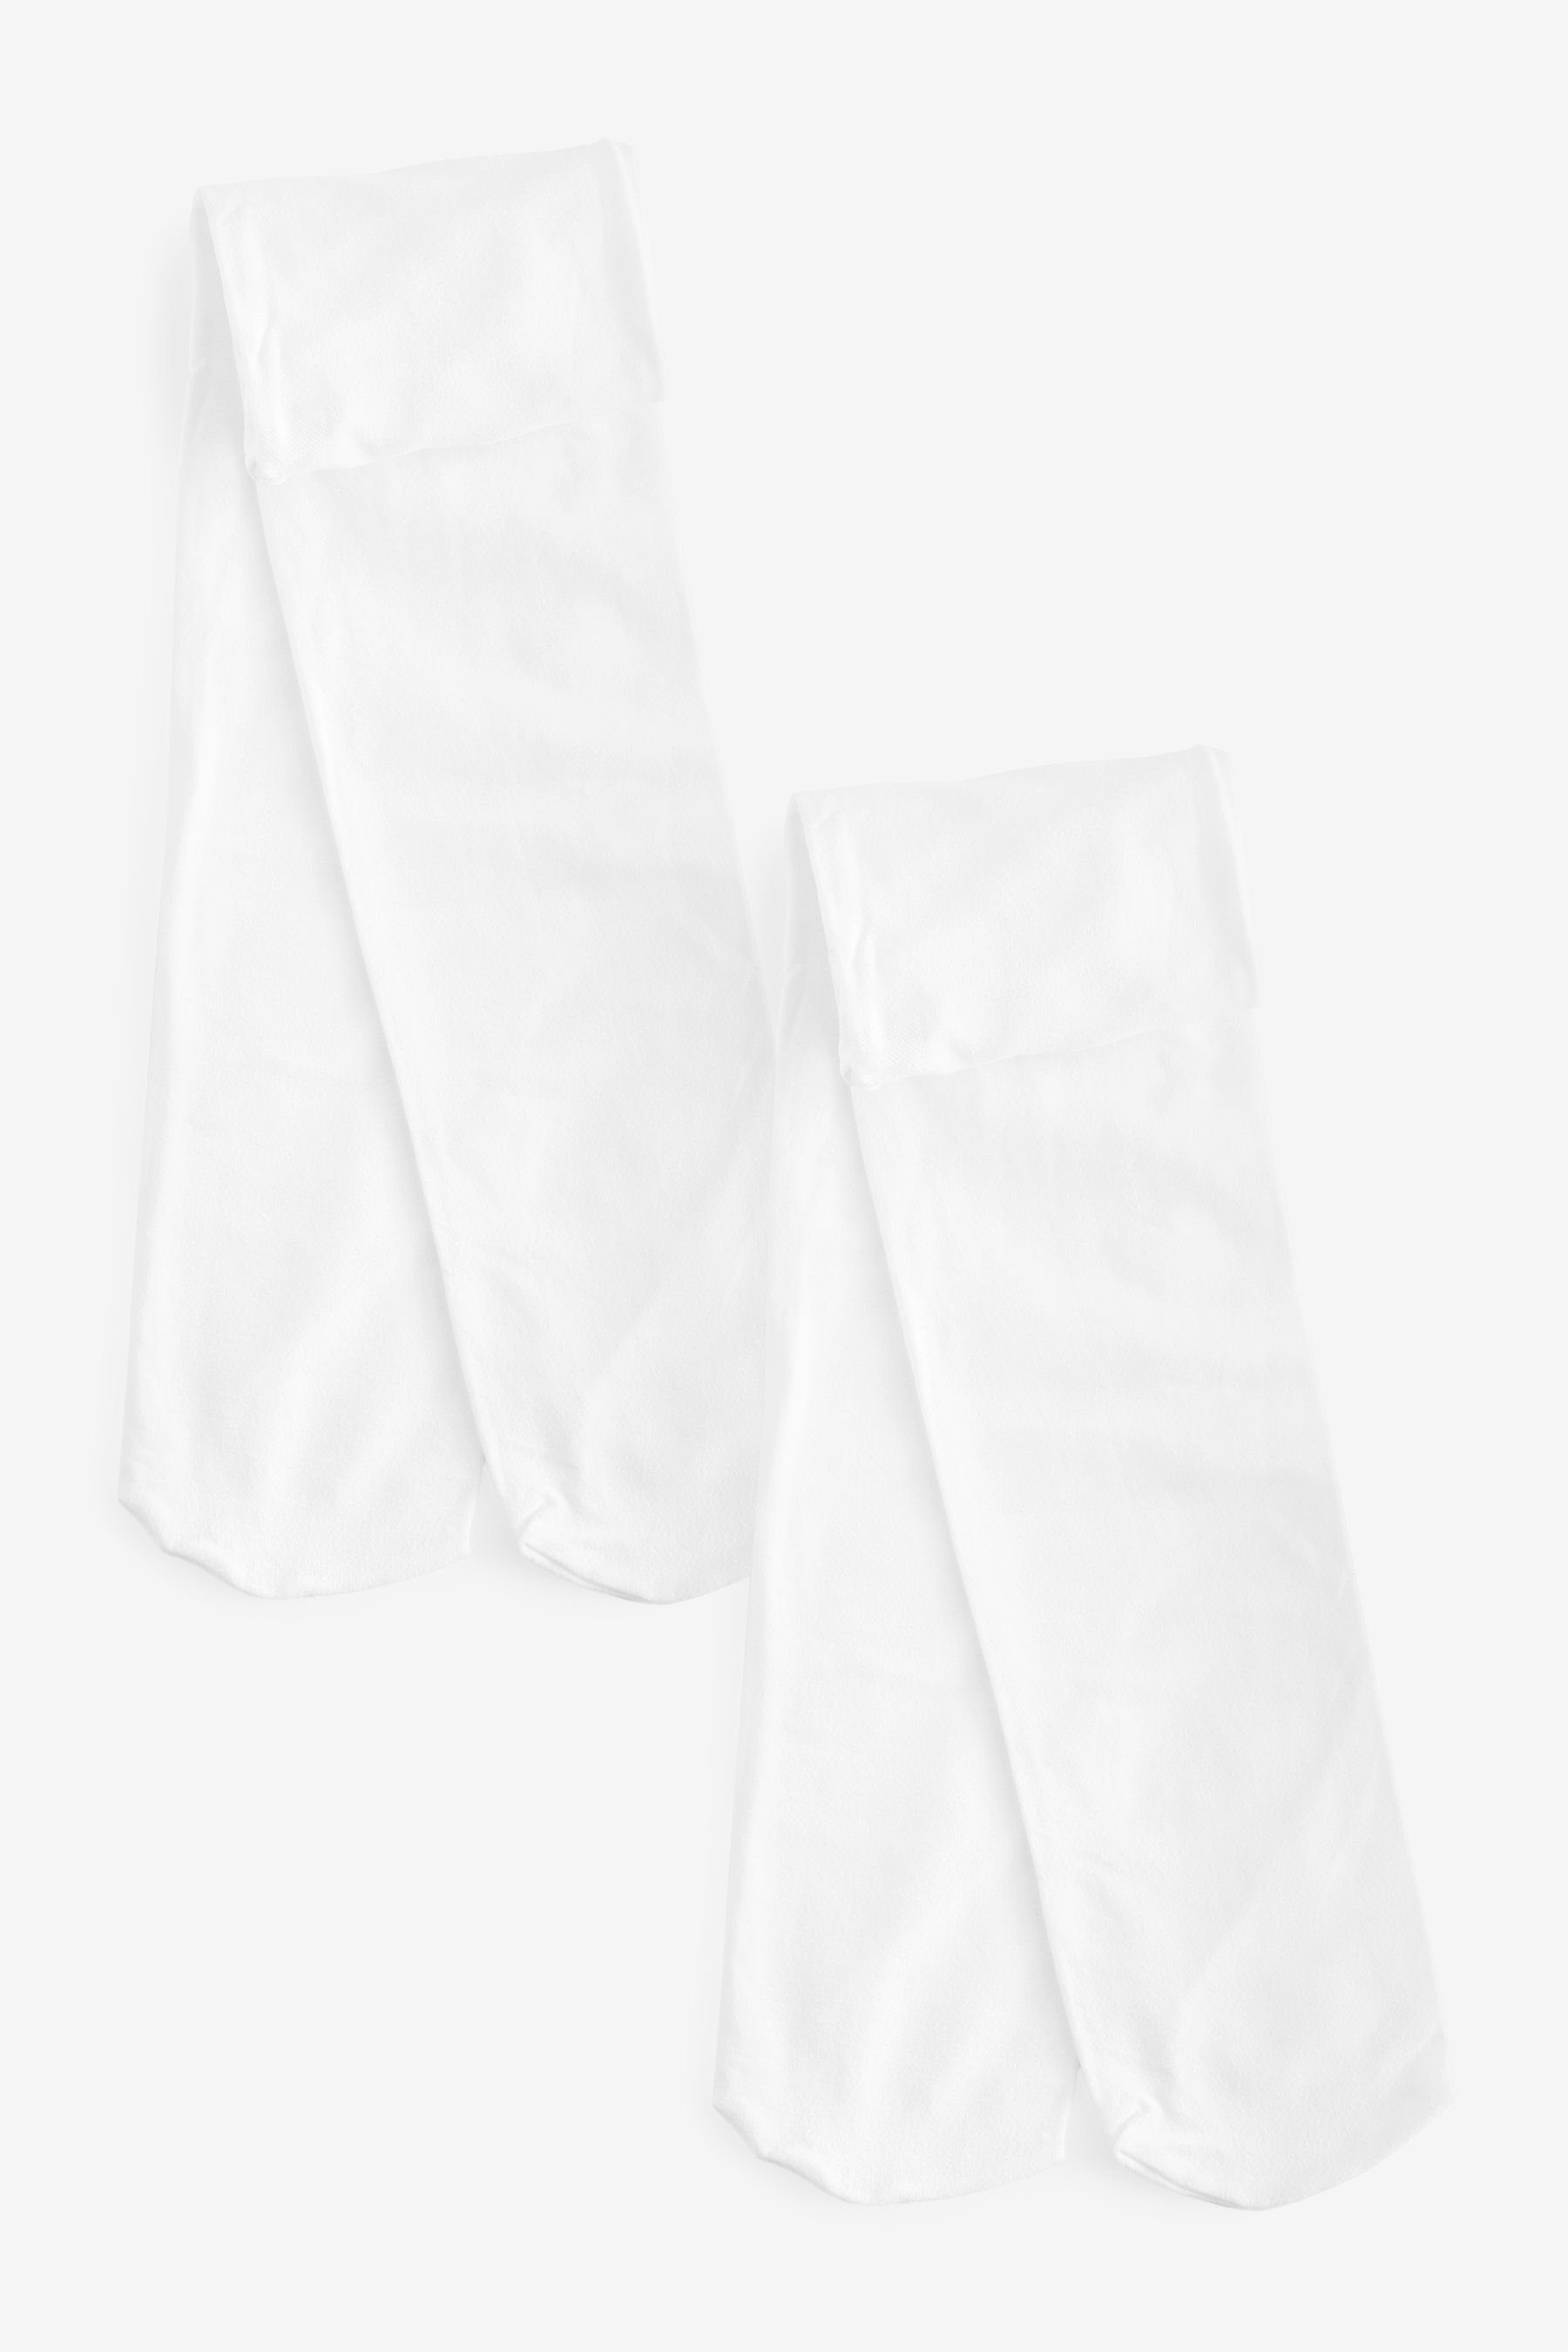 Next Strumpfhose 2 x Strumpfhosen für die Schule, 80 Denier (2 St) White